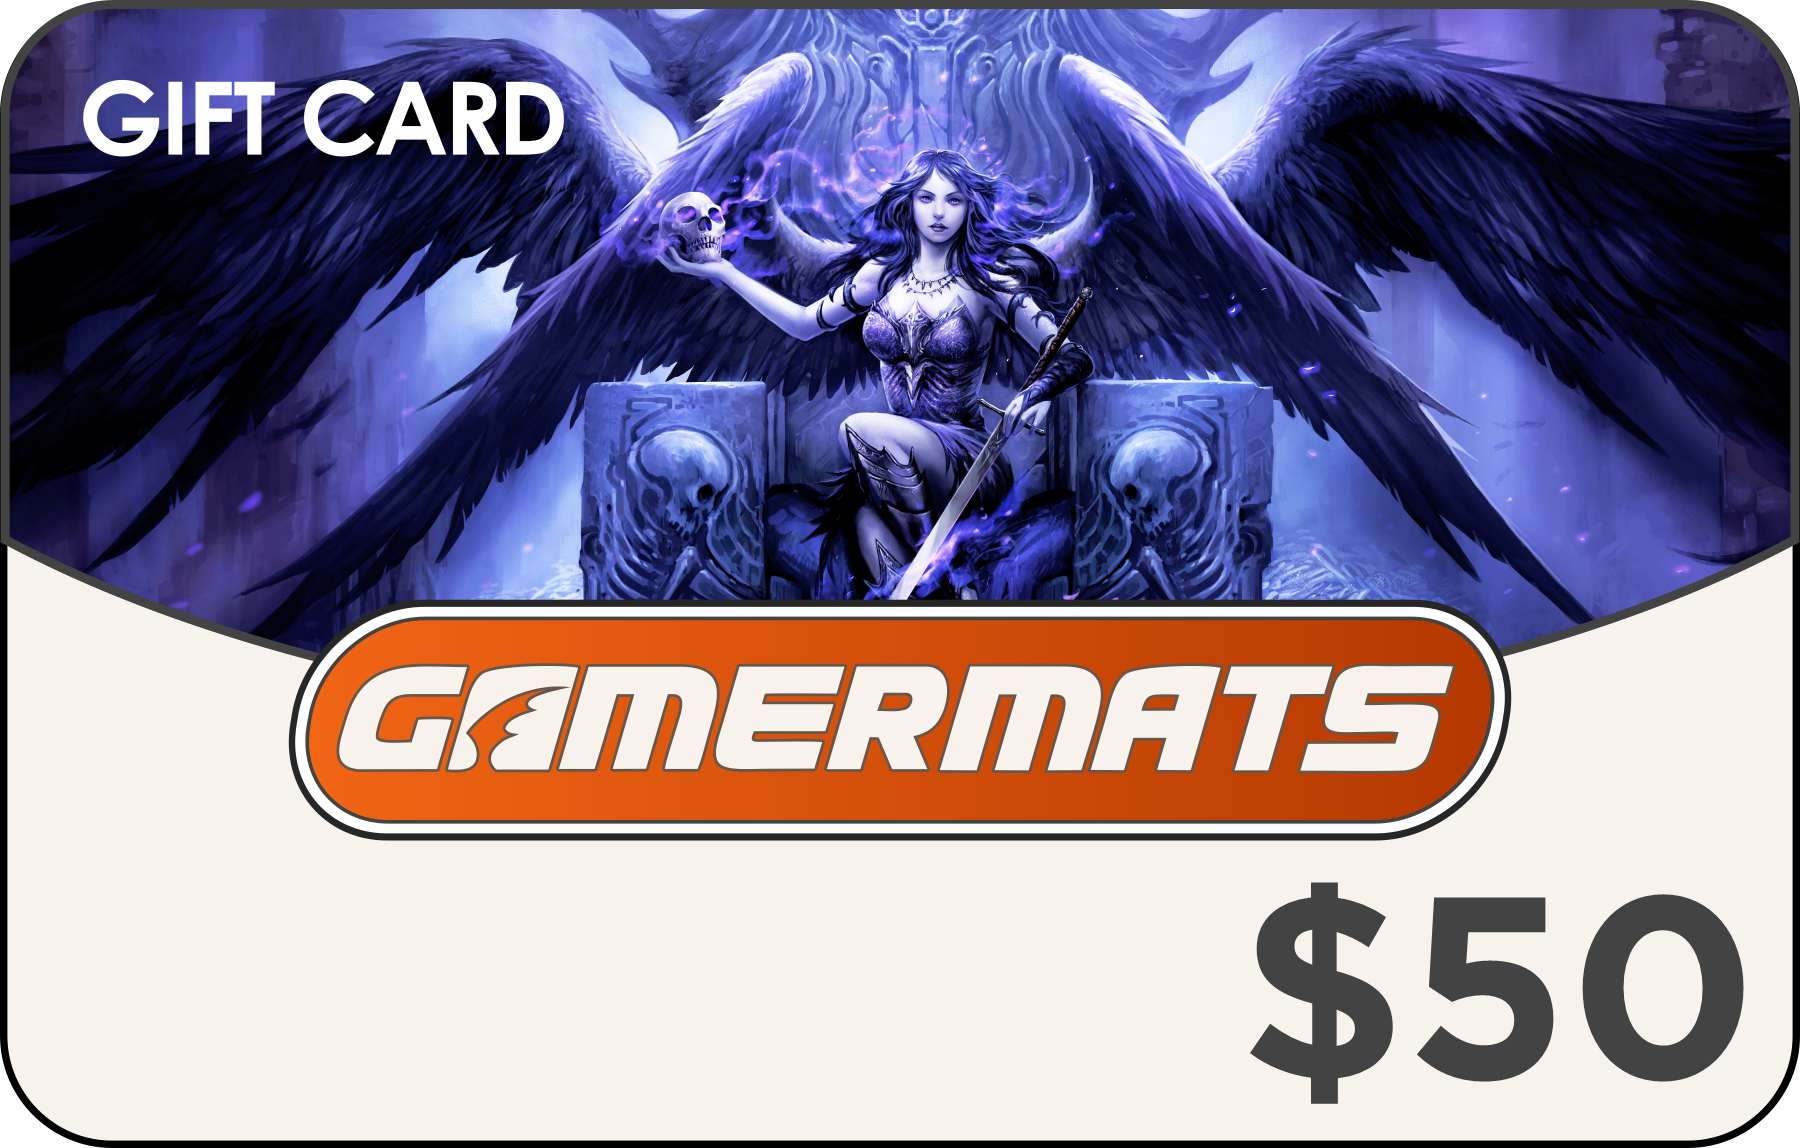 GamerMats Gift Card 150